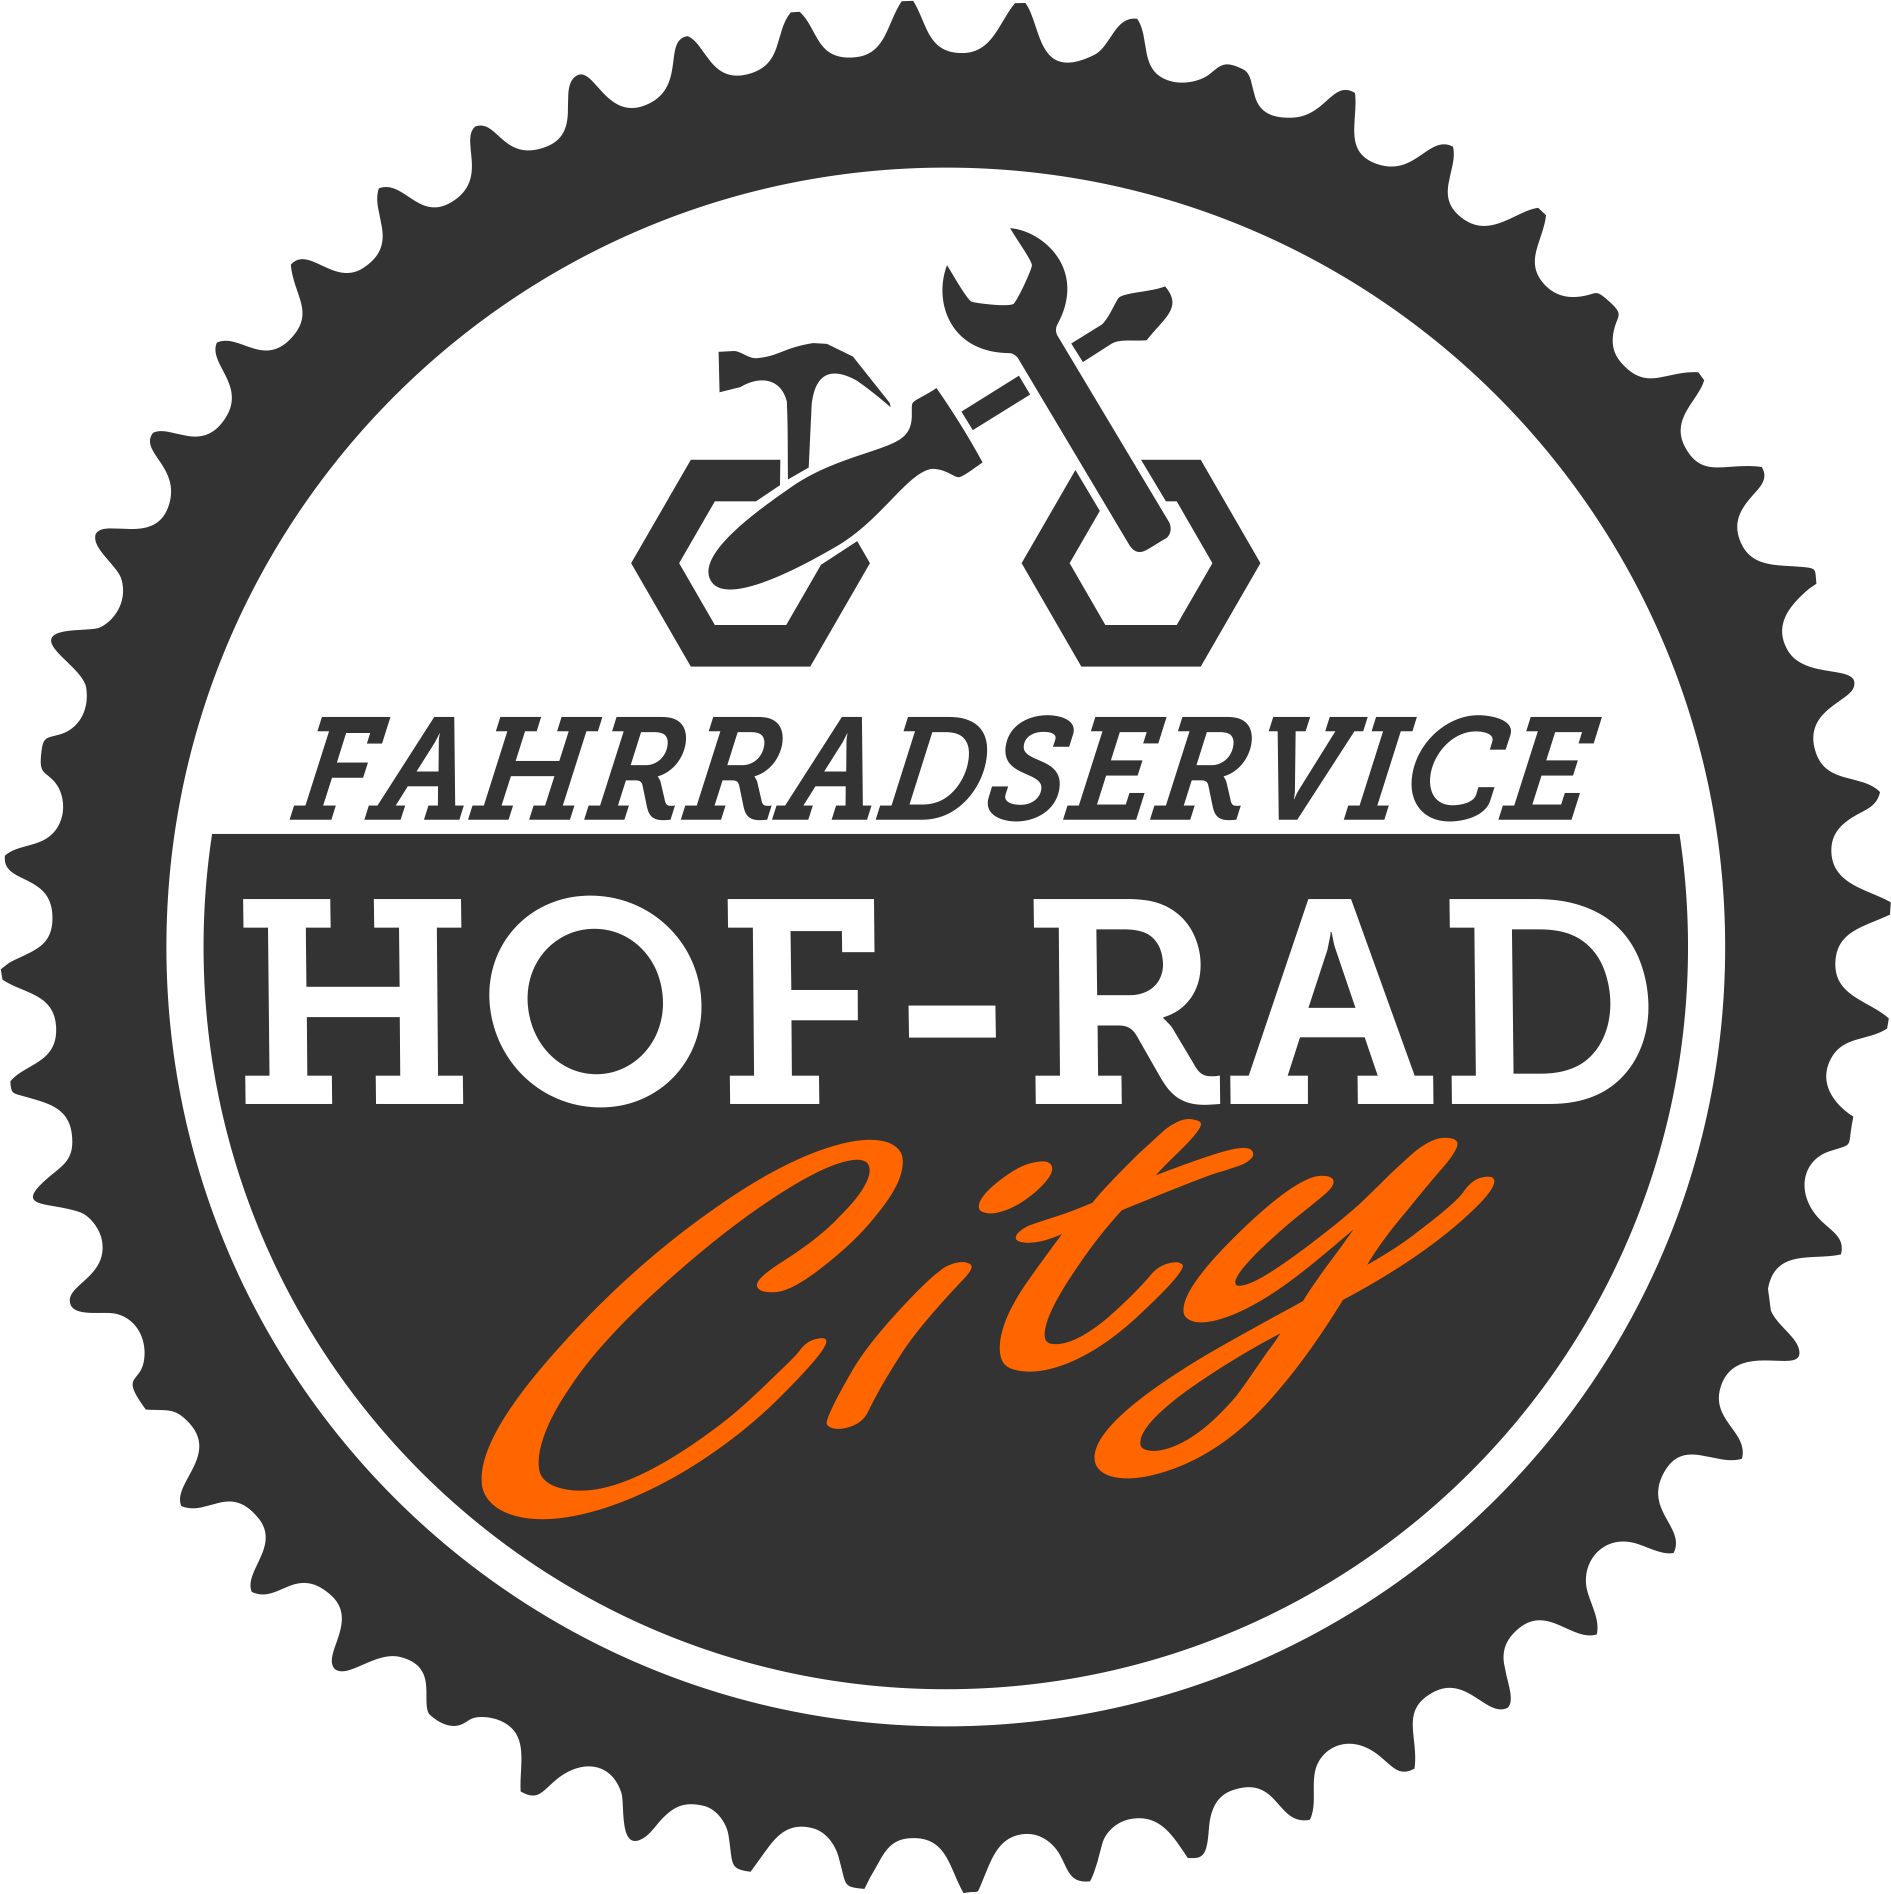 Hofrad- Fahrradwerkstatt und Verkauf in Karlsruhe